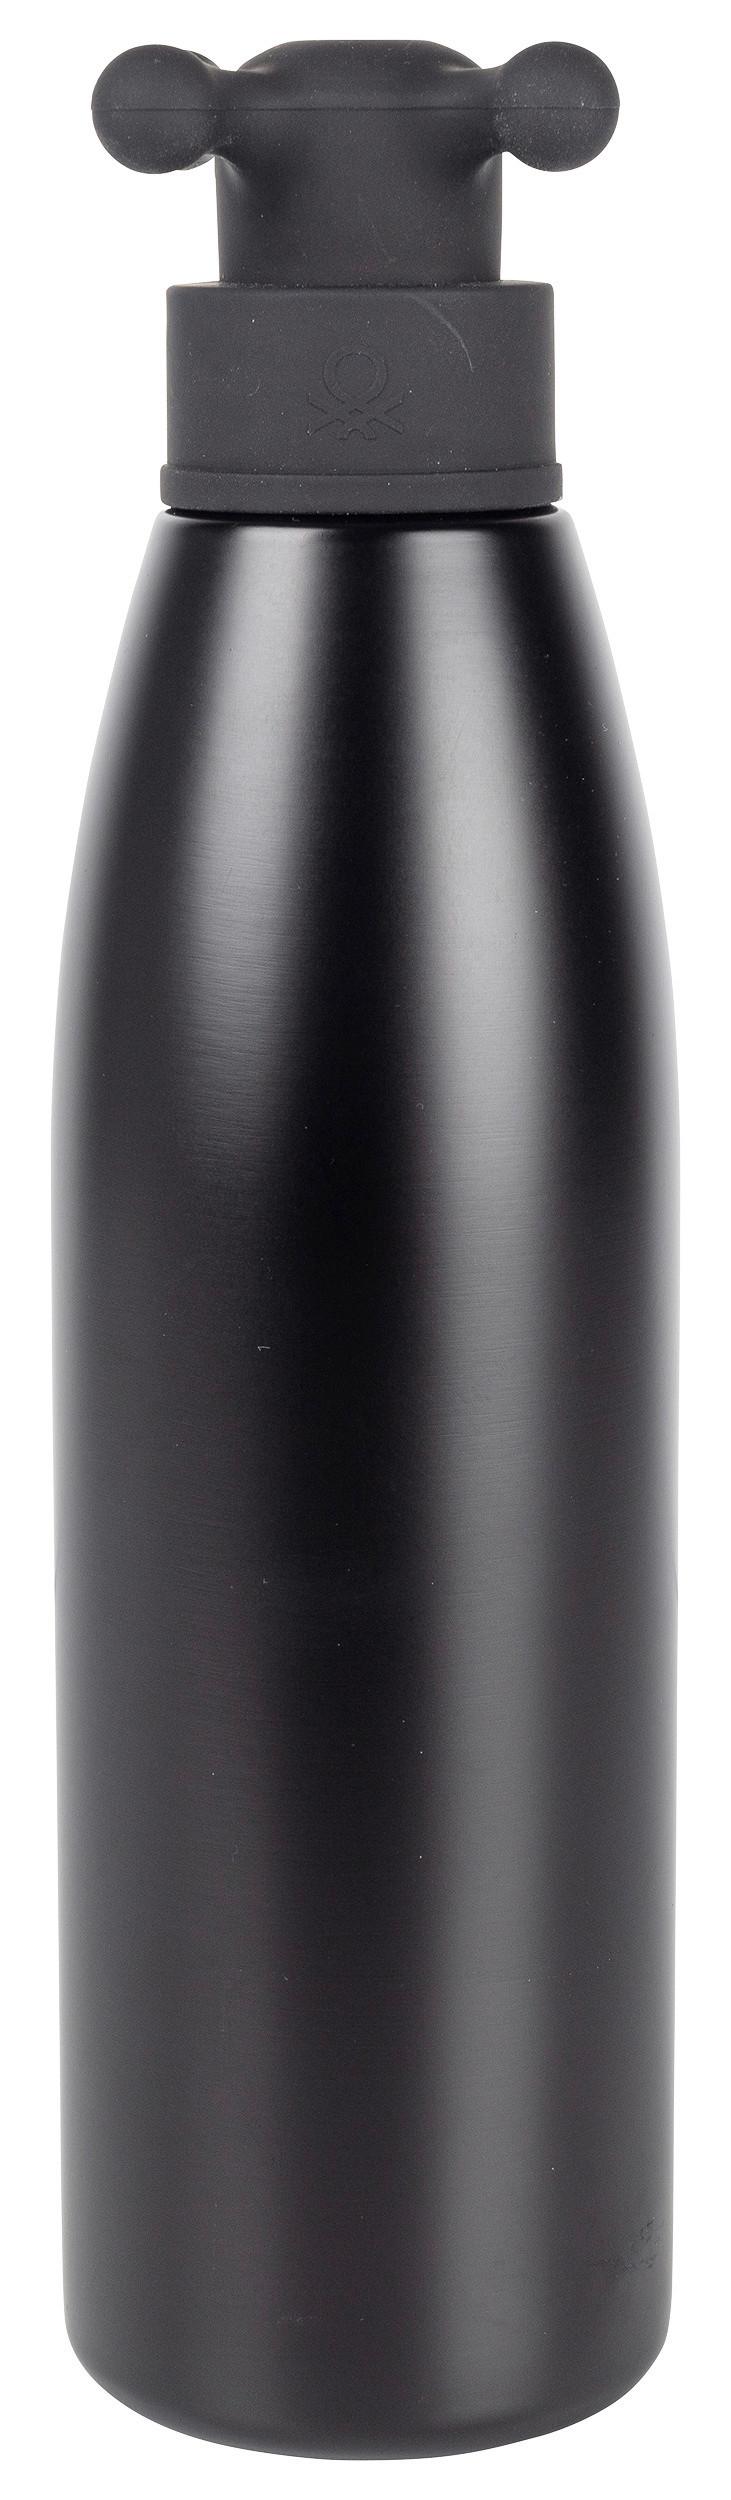 Trinkflasche Black & White - Schwarz, Basics, Kunststoff/Metall (7,4/7/26,5cm) - Benetton